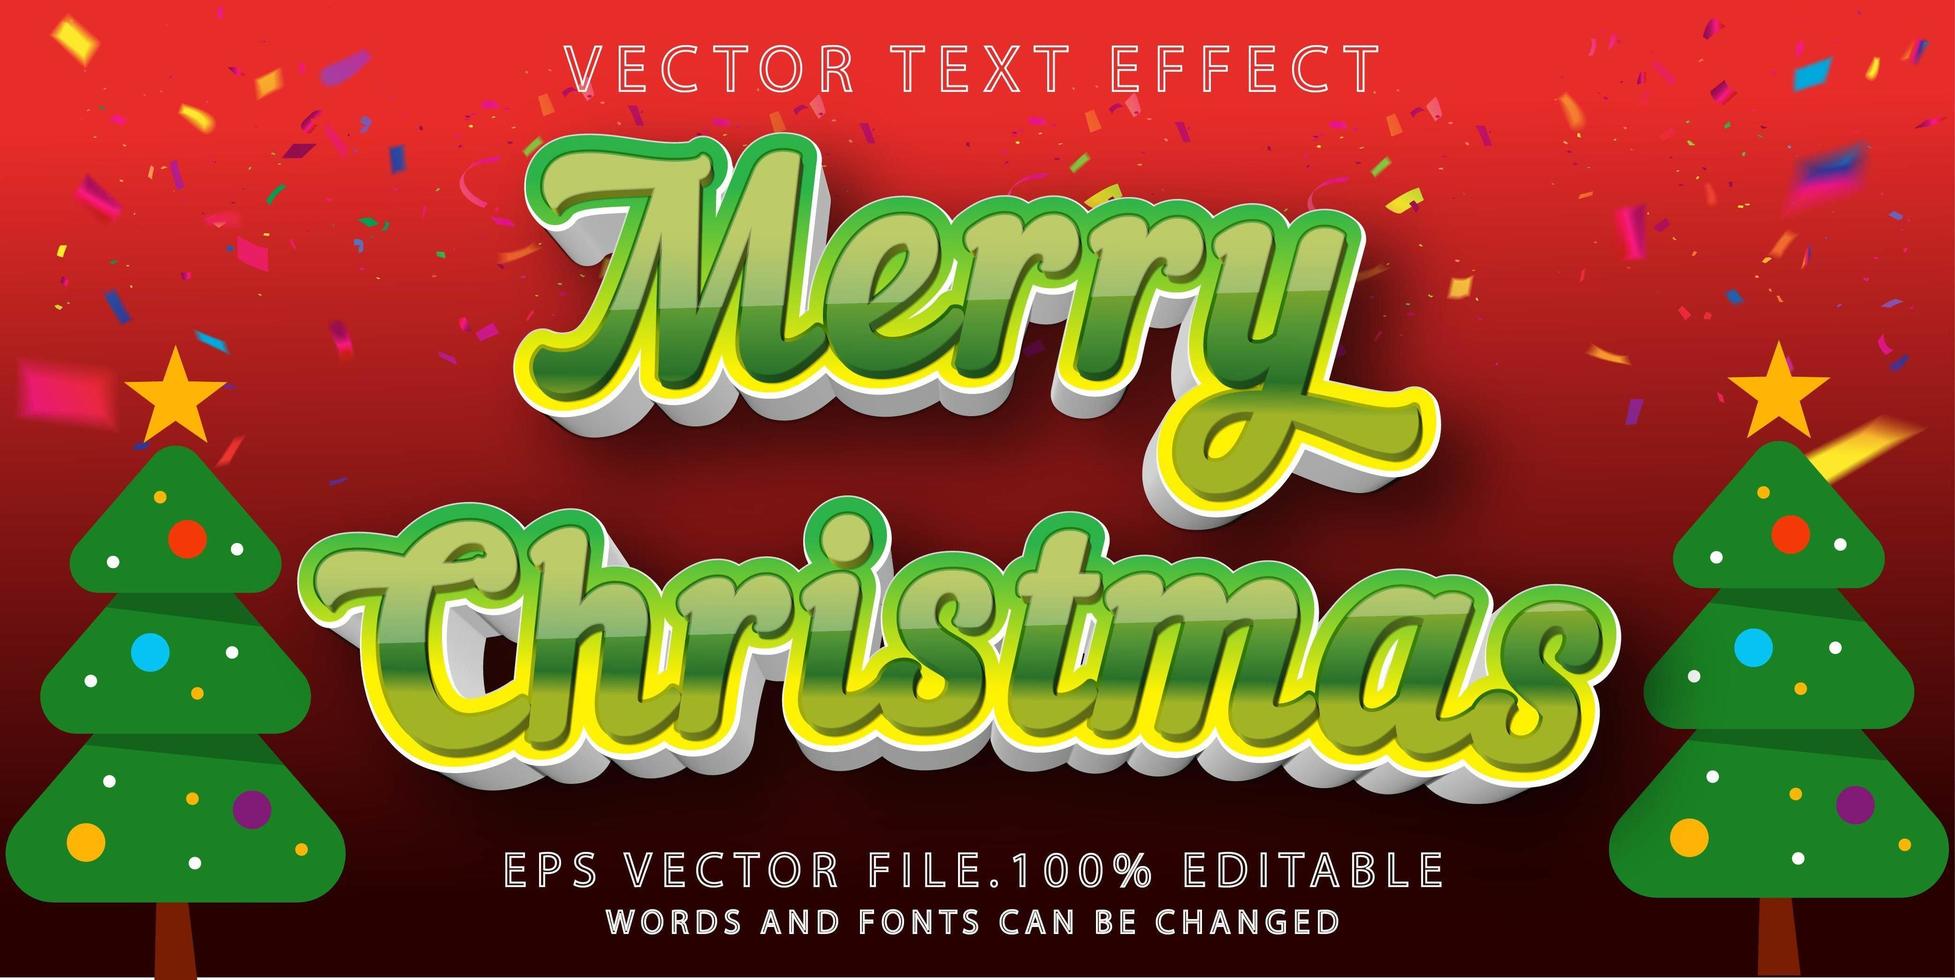 teksteffect vrolijk kerstfeest vector